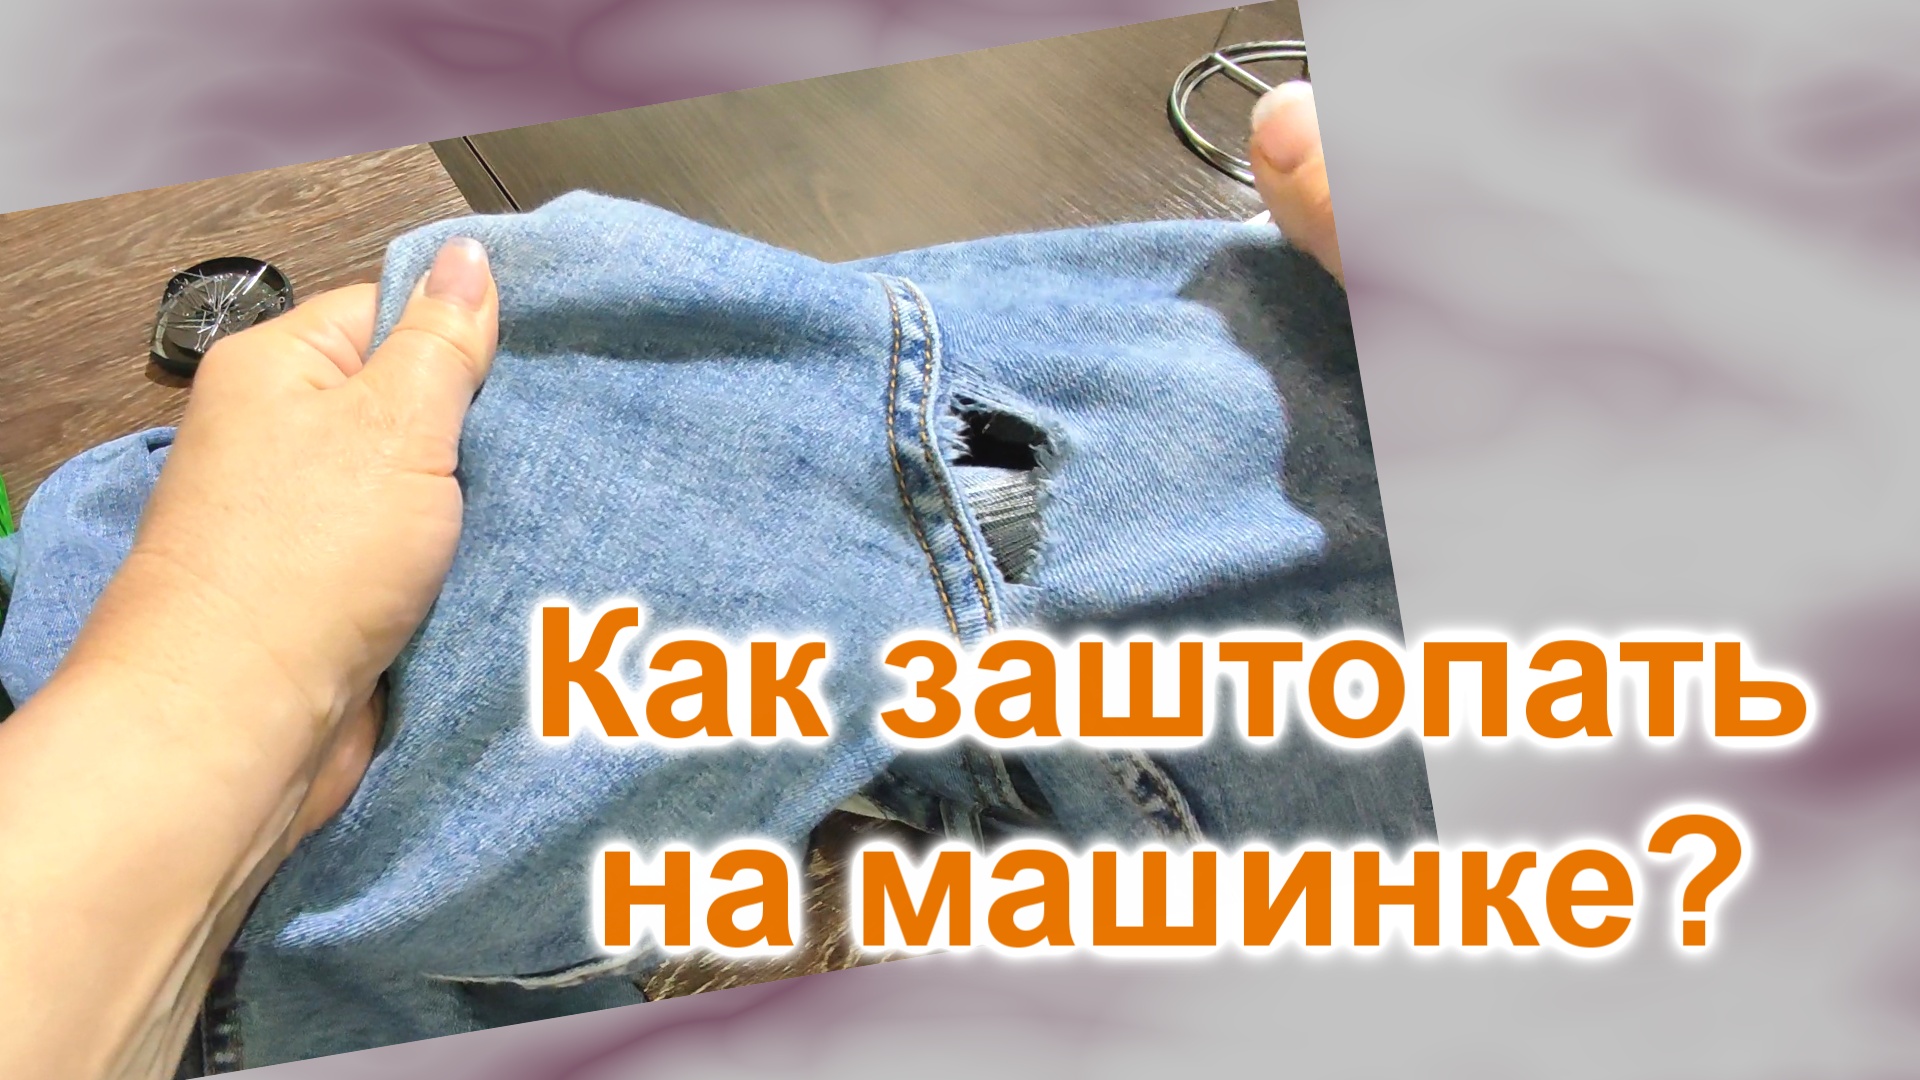 Как заштопать джинсы на машинке (137)/Как красиво заштопать джинсы в паху